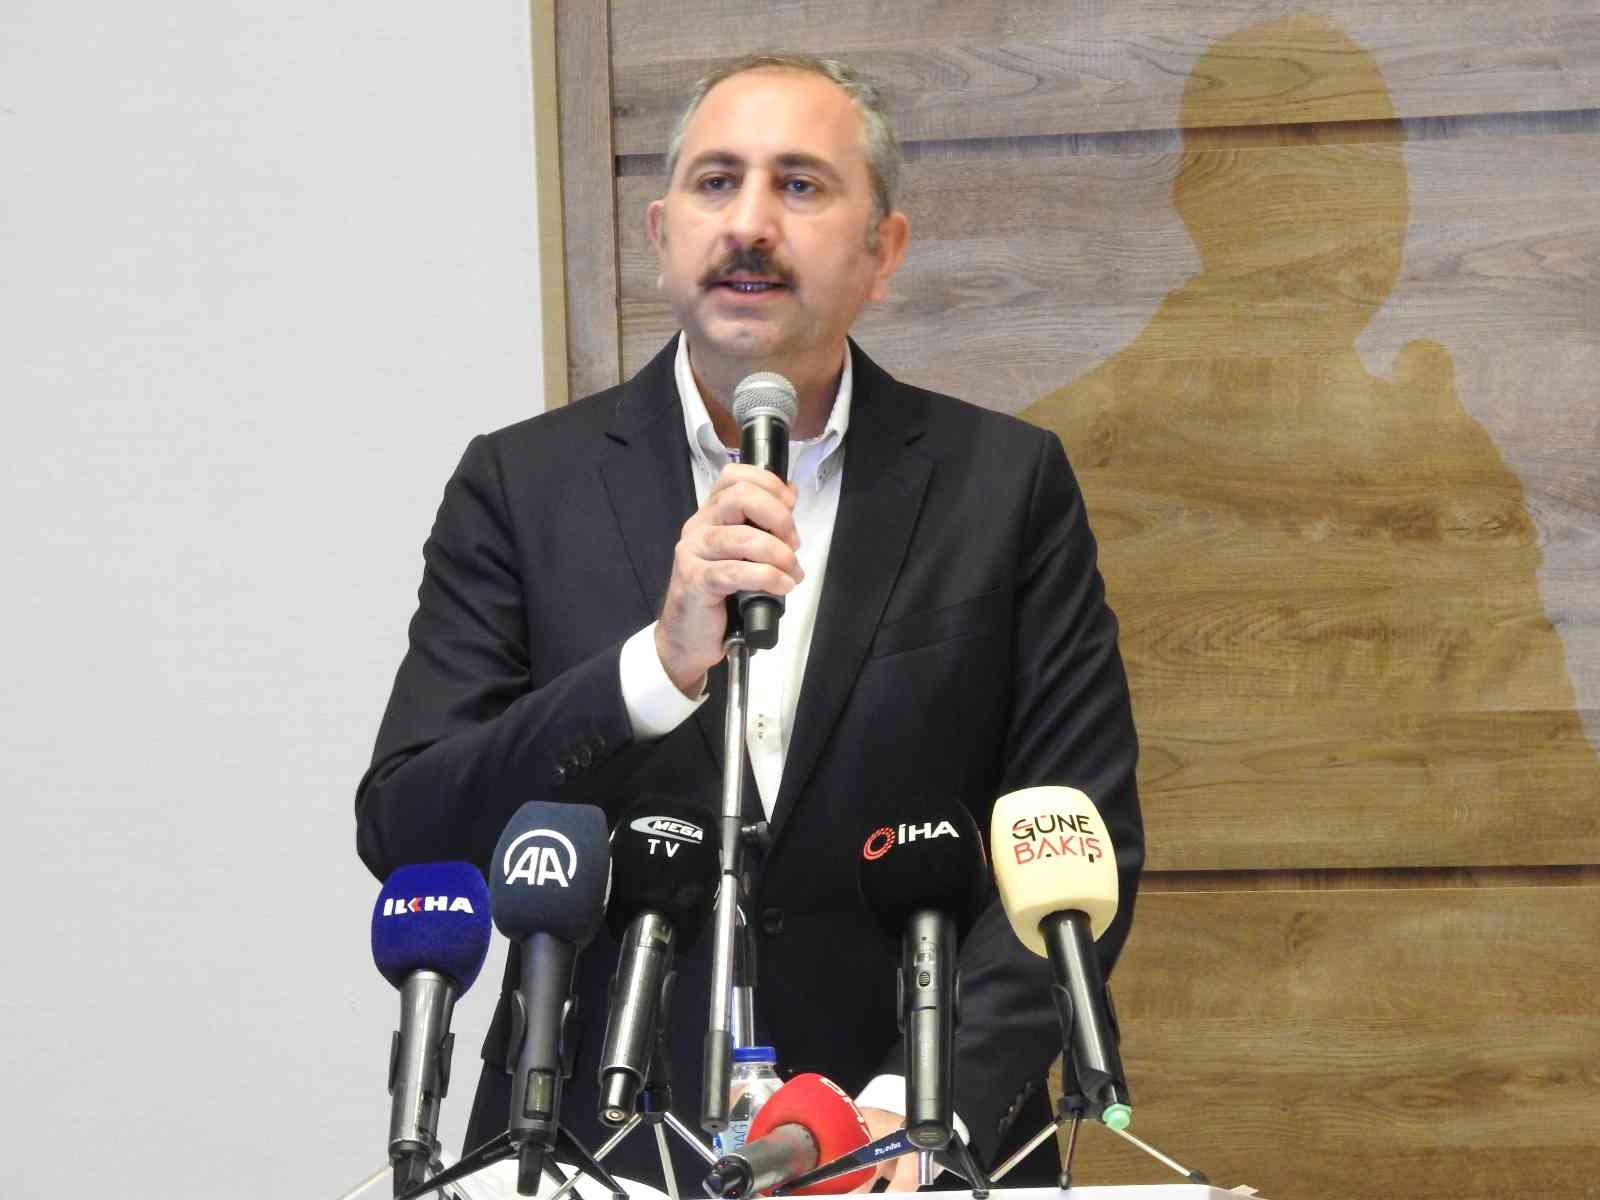 Adalet Bakanı Abdülhamit Gül: “Batının terörle mücadele anlayışı çifte standartlıdır” #gaziantep